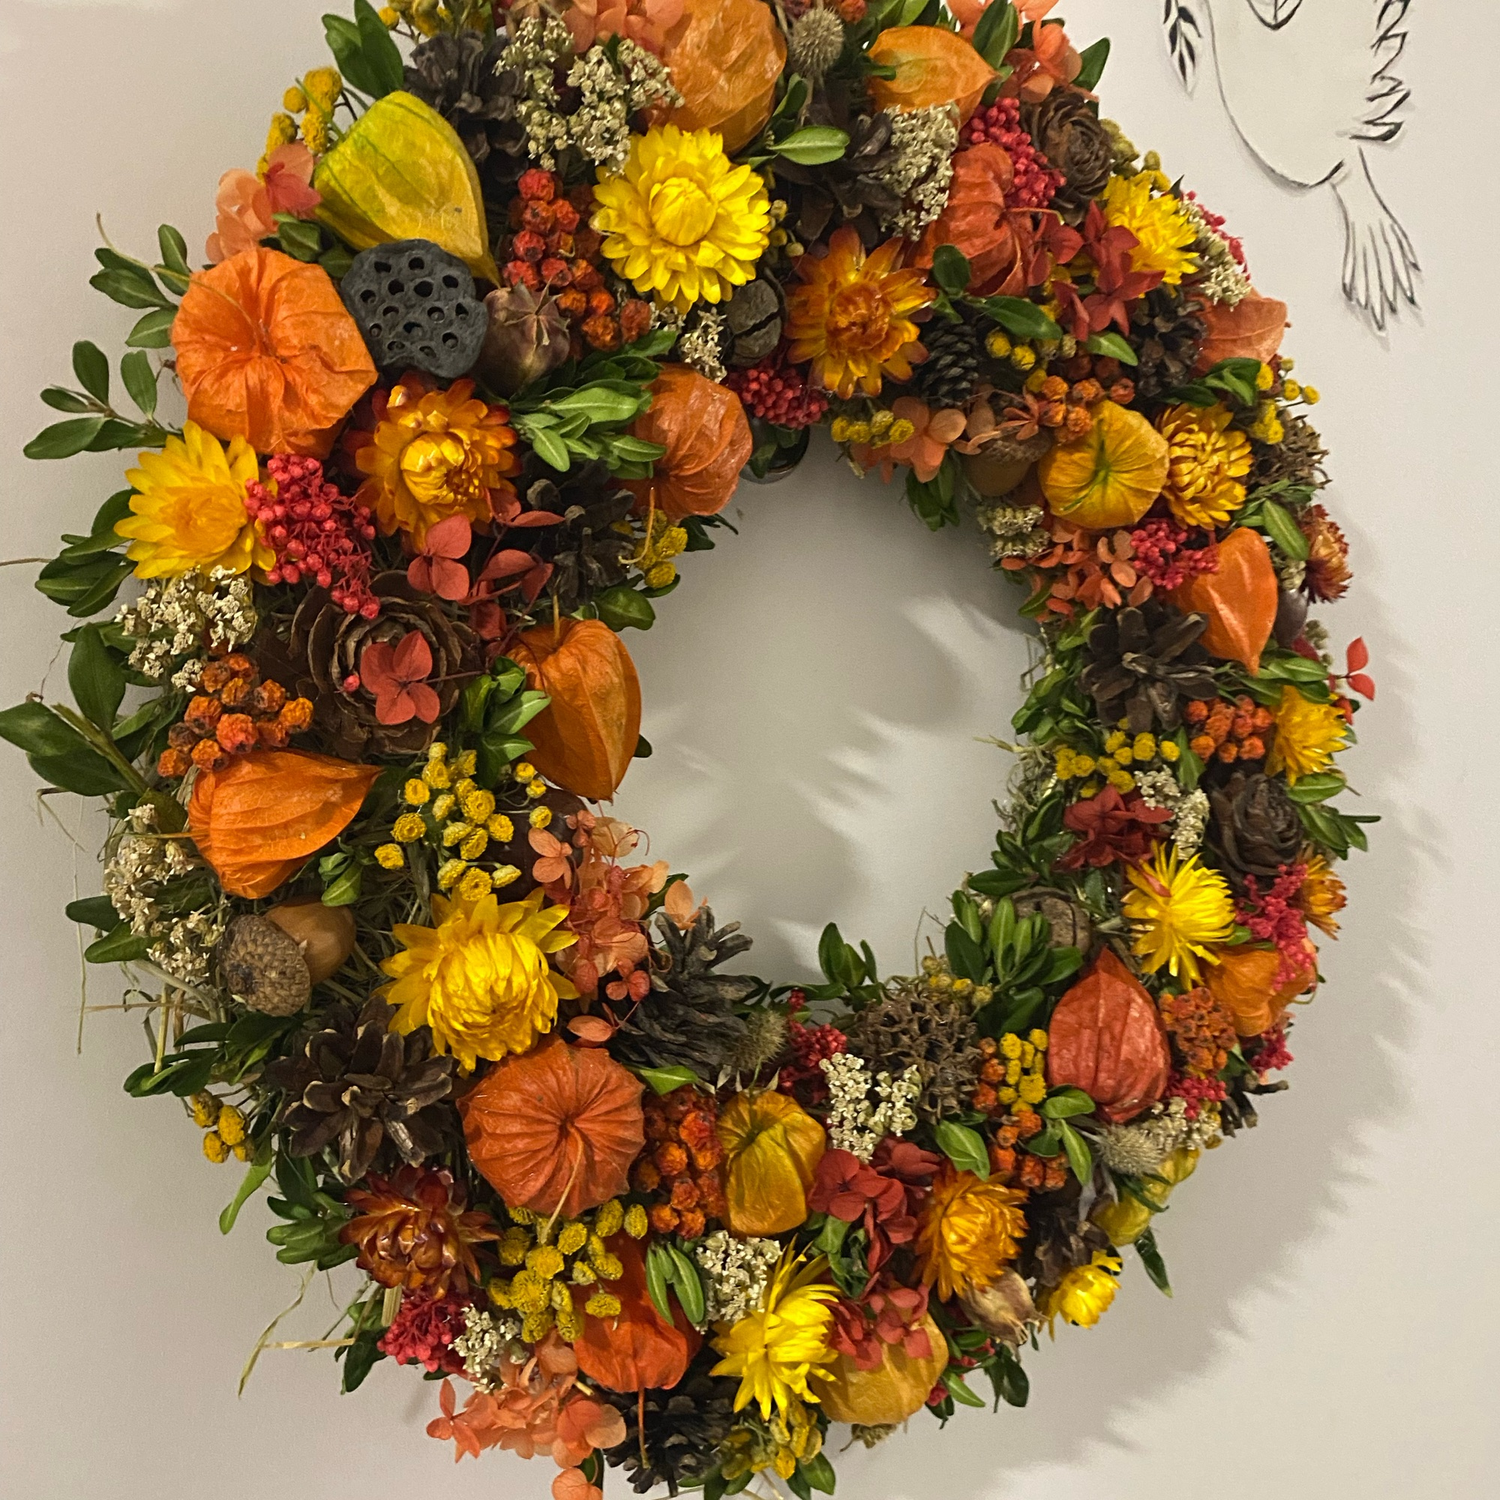 Фото №2 к отзыву покупателя Василисса о товаре Осенний венок в эко стиле из сухоцветов и природных материалов